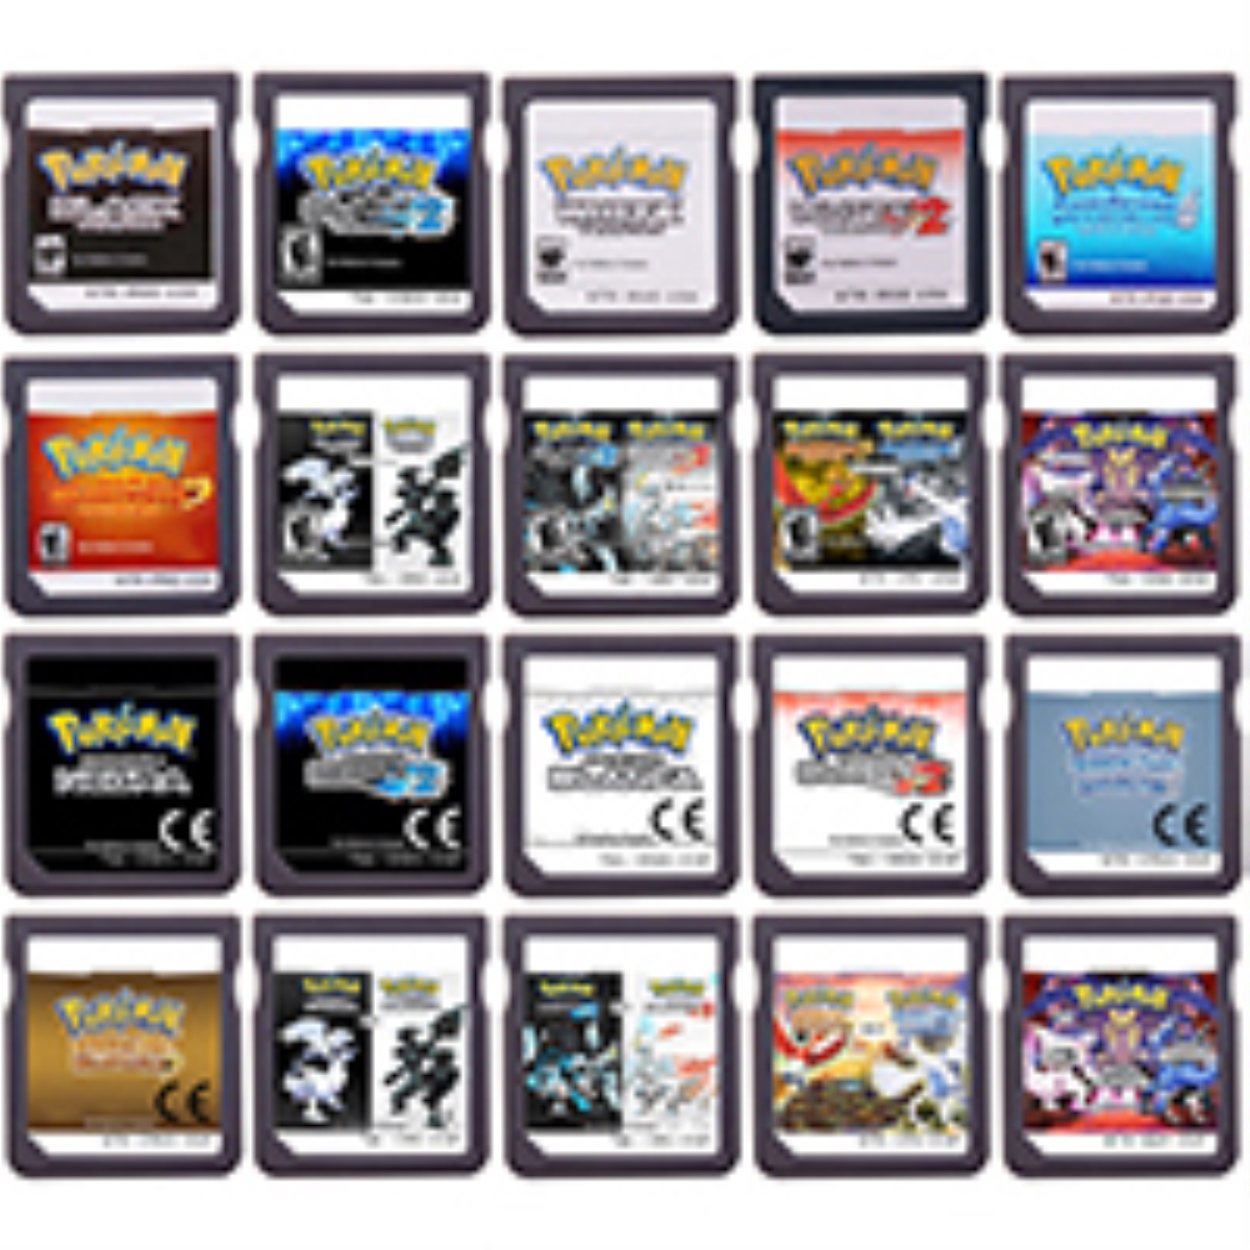 Nintendo 2ds - Videogames - Centenário, Campina Grande 1252262888